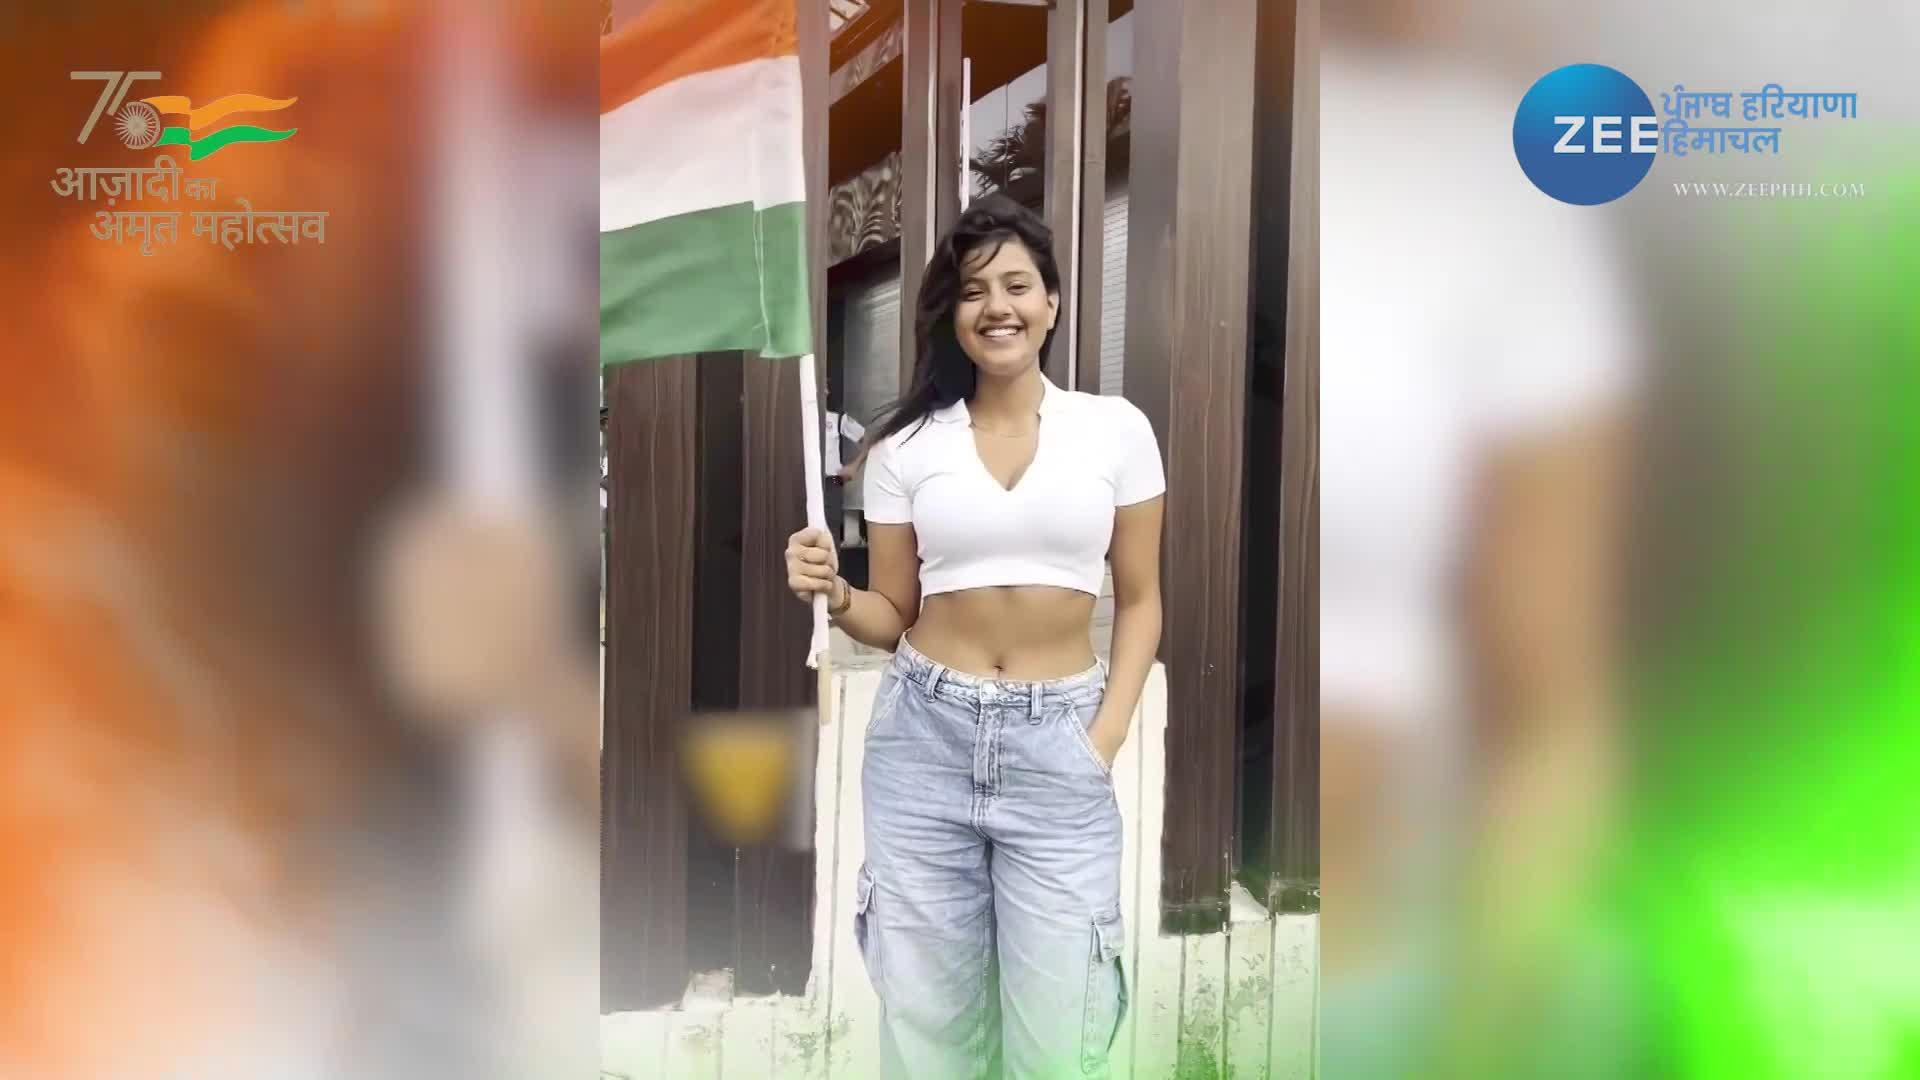 Anjili Telugu Video Sex - Anjali Arora new video viral with flag after mms watch full video plrh |  anjali arora video: à¤…à¤‚à¤œà¤²à¤¿ à¤…à¤°à¥‹à¤¡à¤¼à¤¾ à¤•à¤¾ à¤à¤• à¤”à¤° à¤µà¥€à¤¡à¤¿à¤¯à¥‹ à¤¹à¥‹ à¤°à¤¹à¤¾ à¤µà¤¾à¤¯à¤°à¤², à¤¯à¥‚à¤œà¤°à¥à¤¸ à¤•à¤°  à¤œà¤®à¤•à¤° à¤Ÿà¥à¤°à¥‹